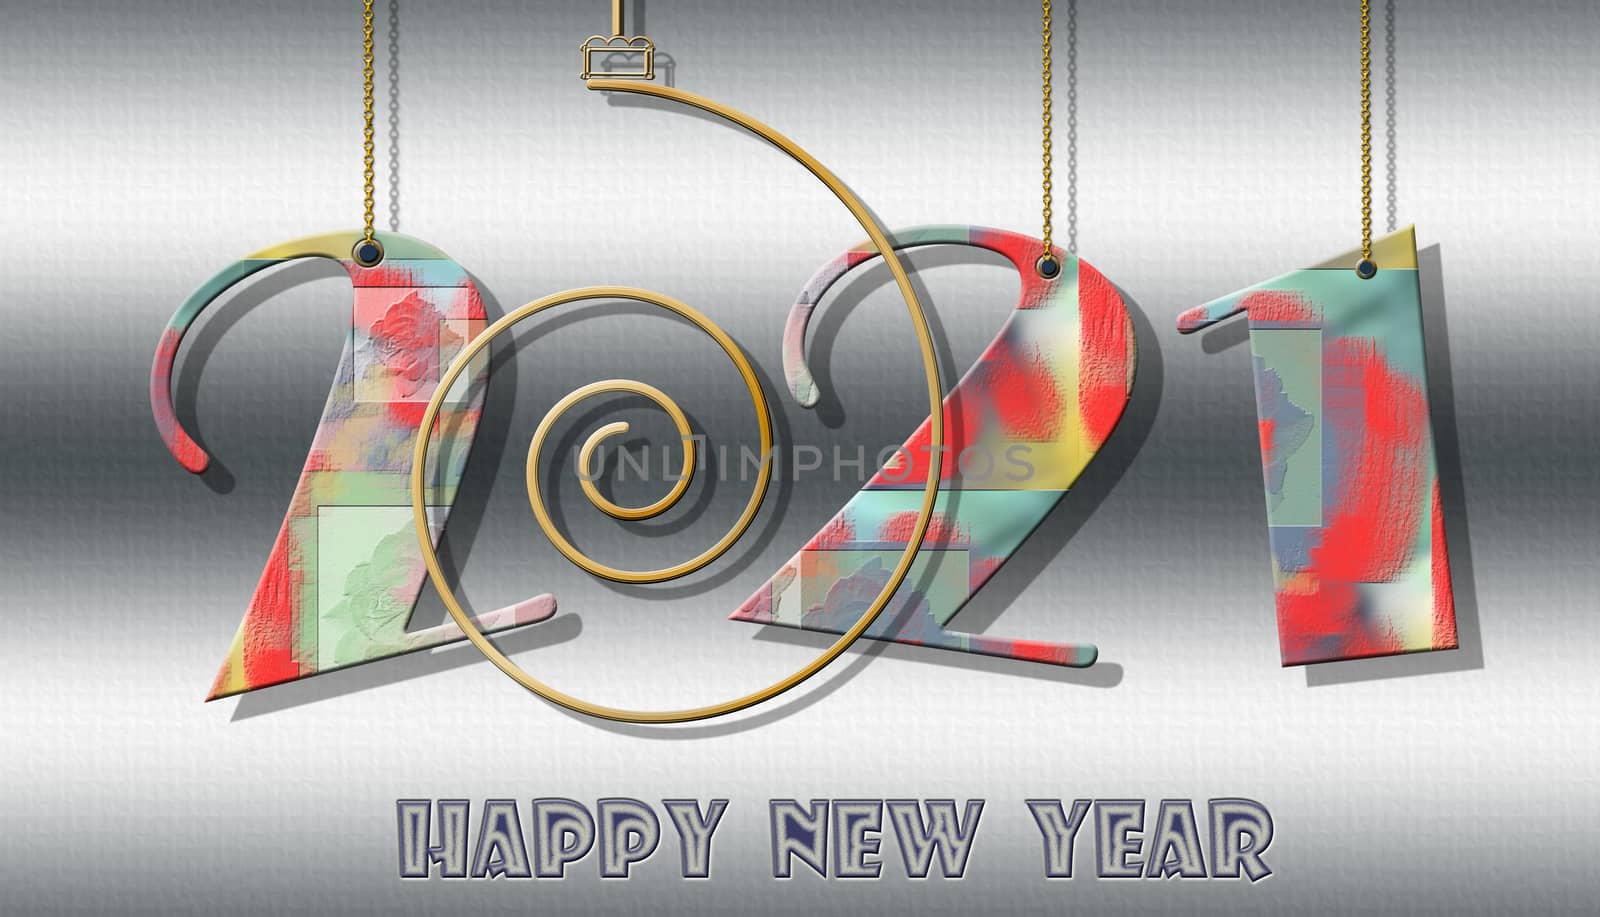 Happy 2021 new year banner by NelliPolk